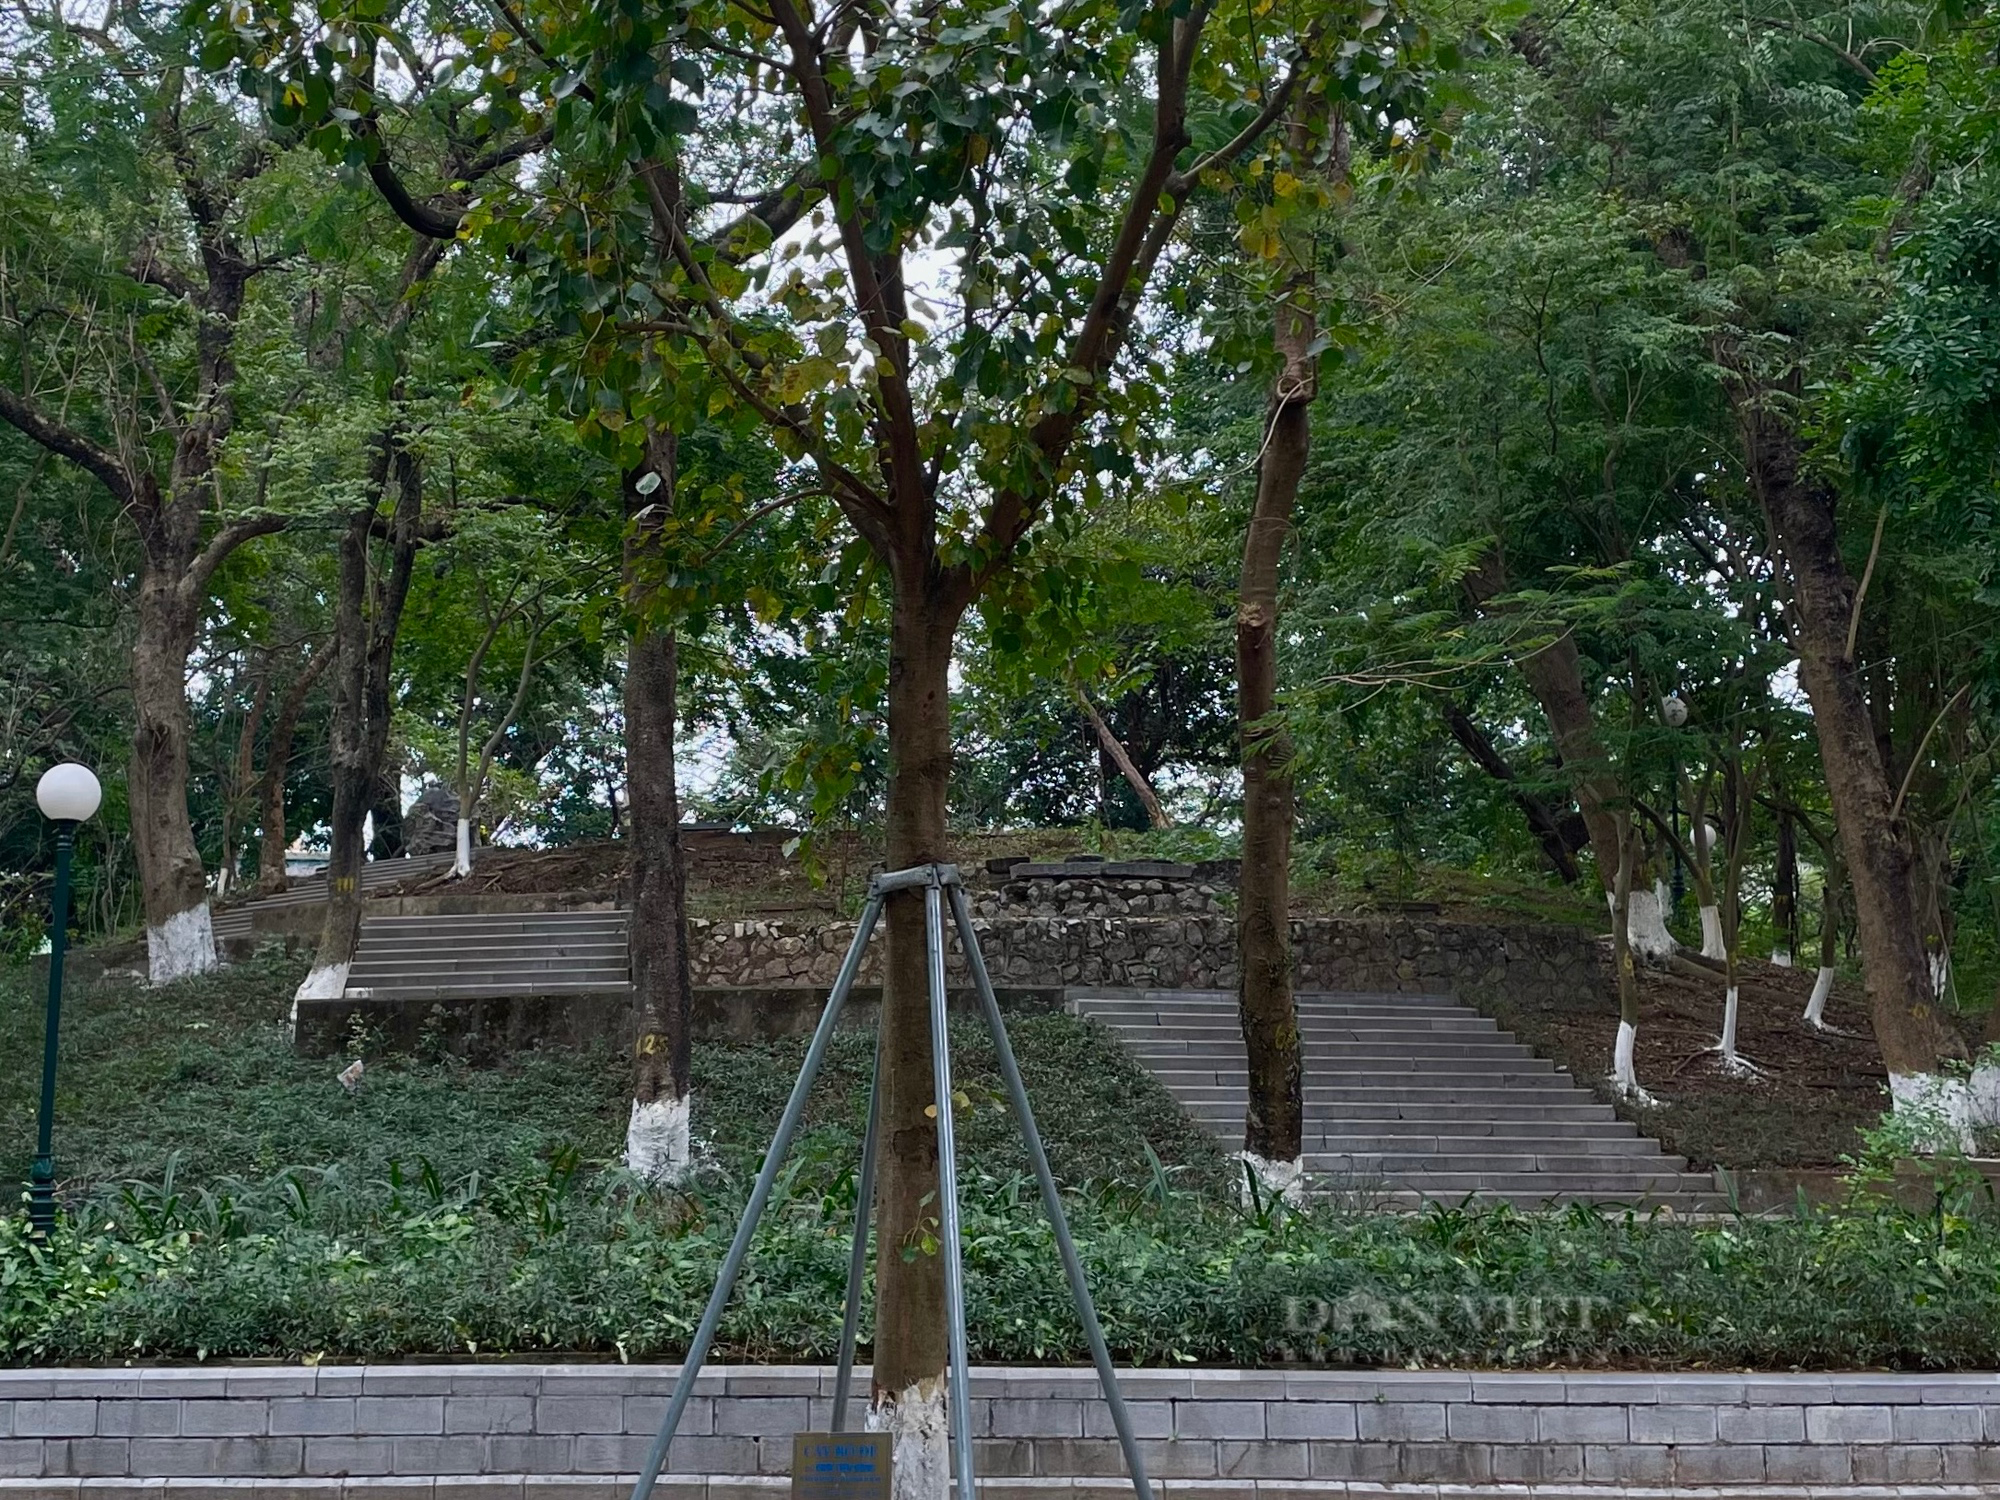 Tiết lộ bất ngờ về bức tượng vua Quang Trung trong công viên Đống Đa Hà Nội - Ảnh 2.